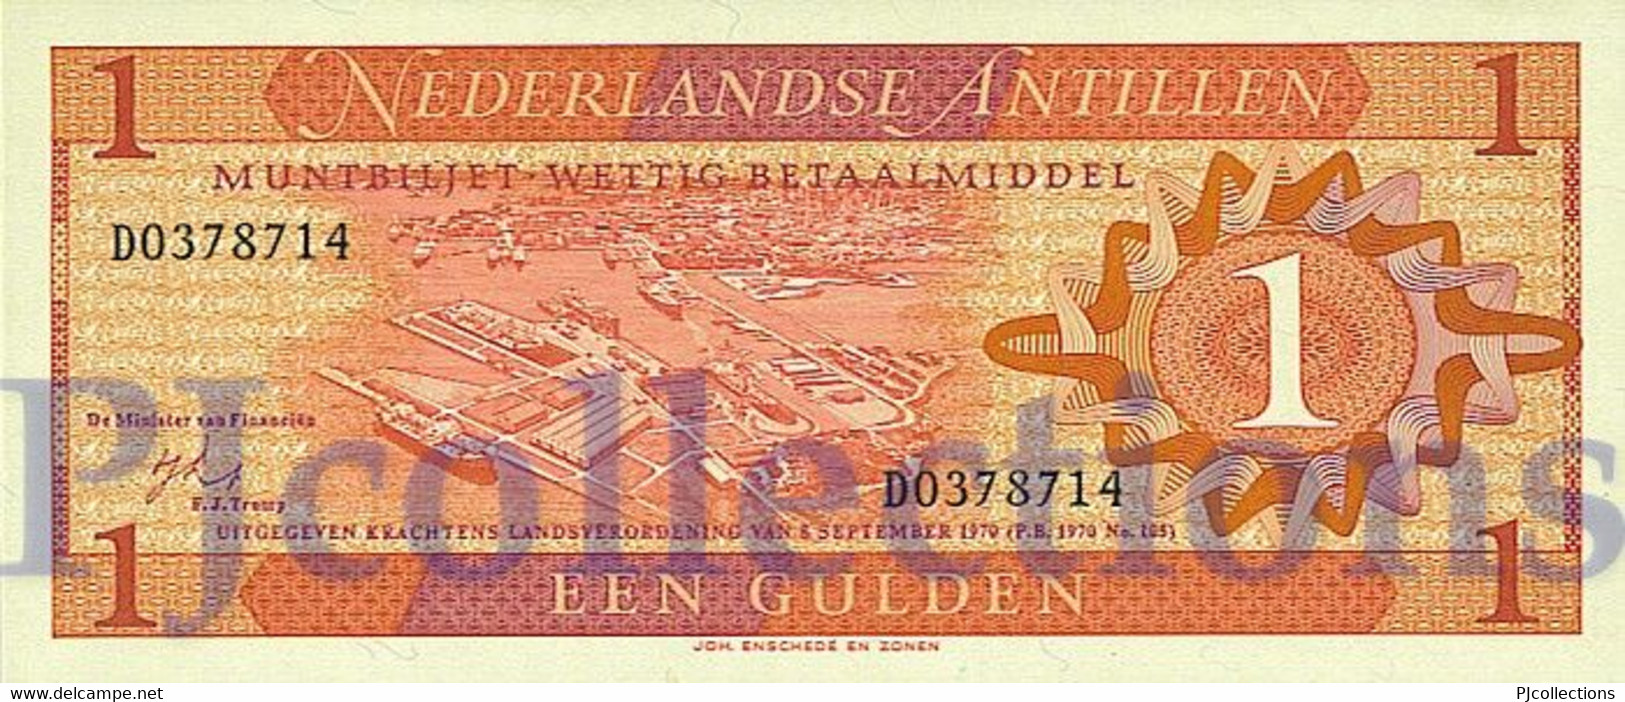 LOT NETHERLANDS ANTILLES 1 GULDEN 1970 PICK 20a UNC X 5 PCS - Antilles Néerlandaises (...-1986)